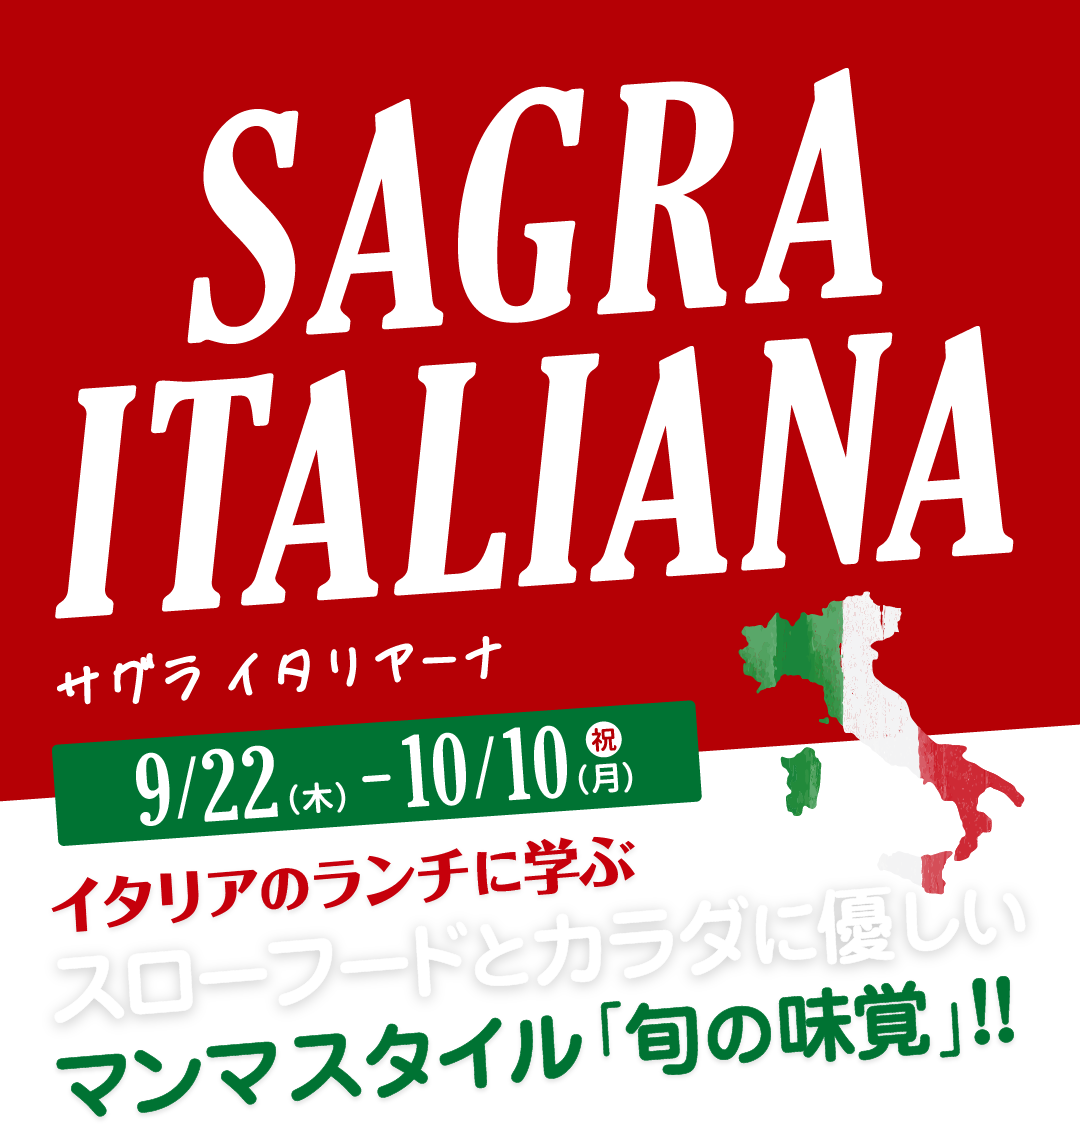 サグラ イタリアーナ SAGRA ITALIANA イタリアのランチに学ぶスローフードとカラダに優しいマンマスタイル「旬の味覚」!!